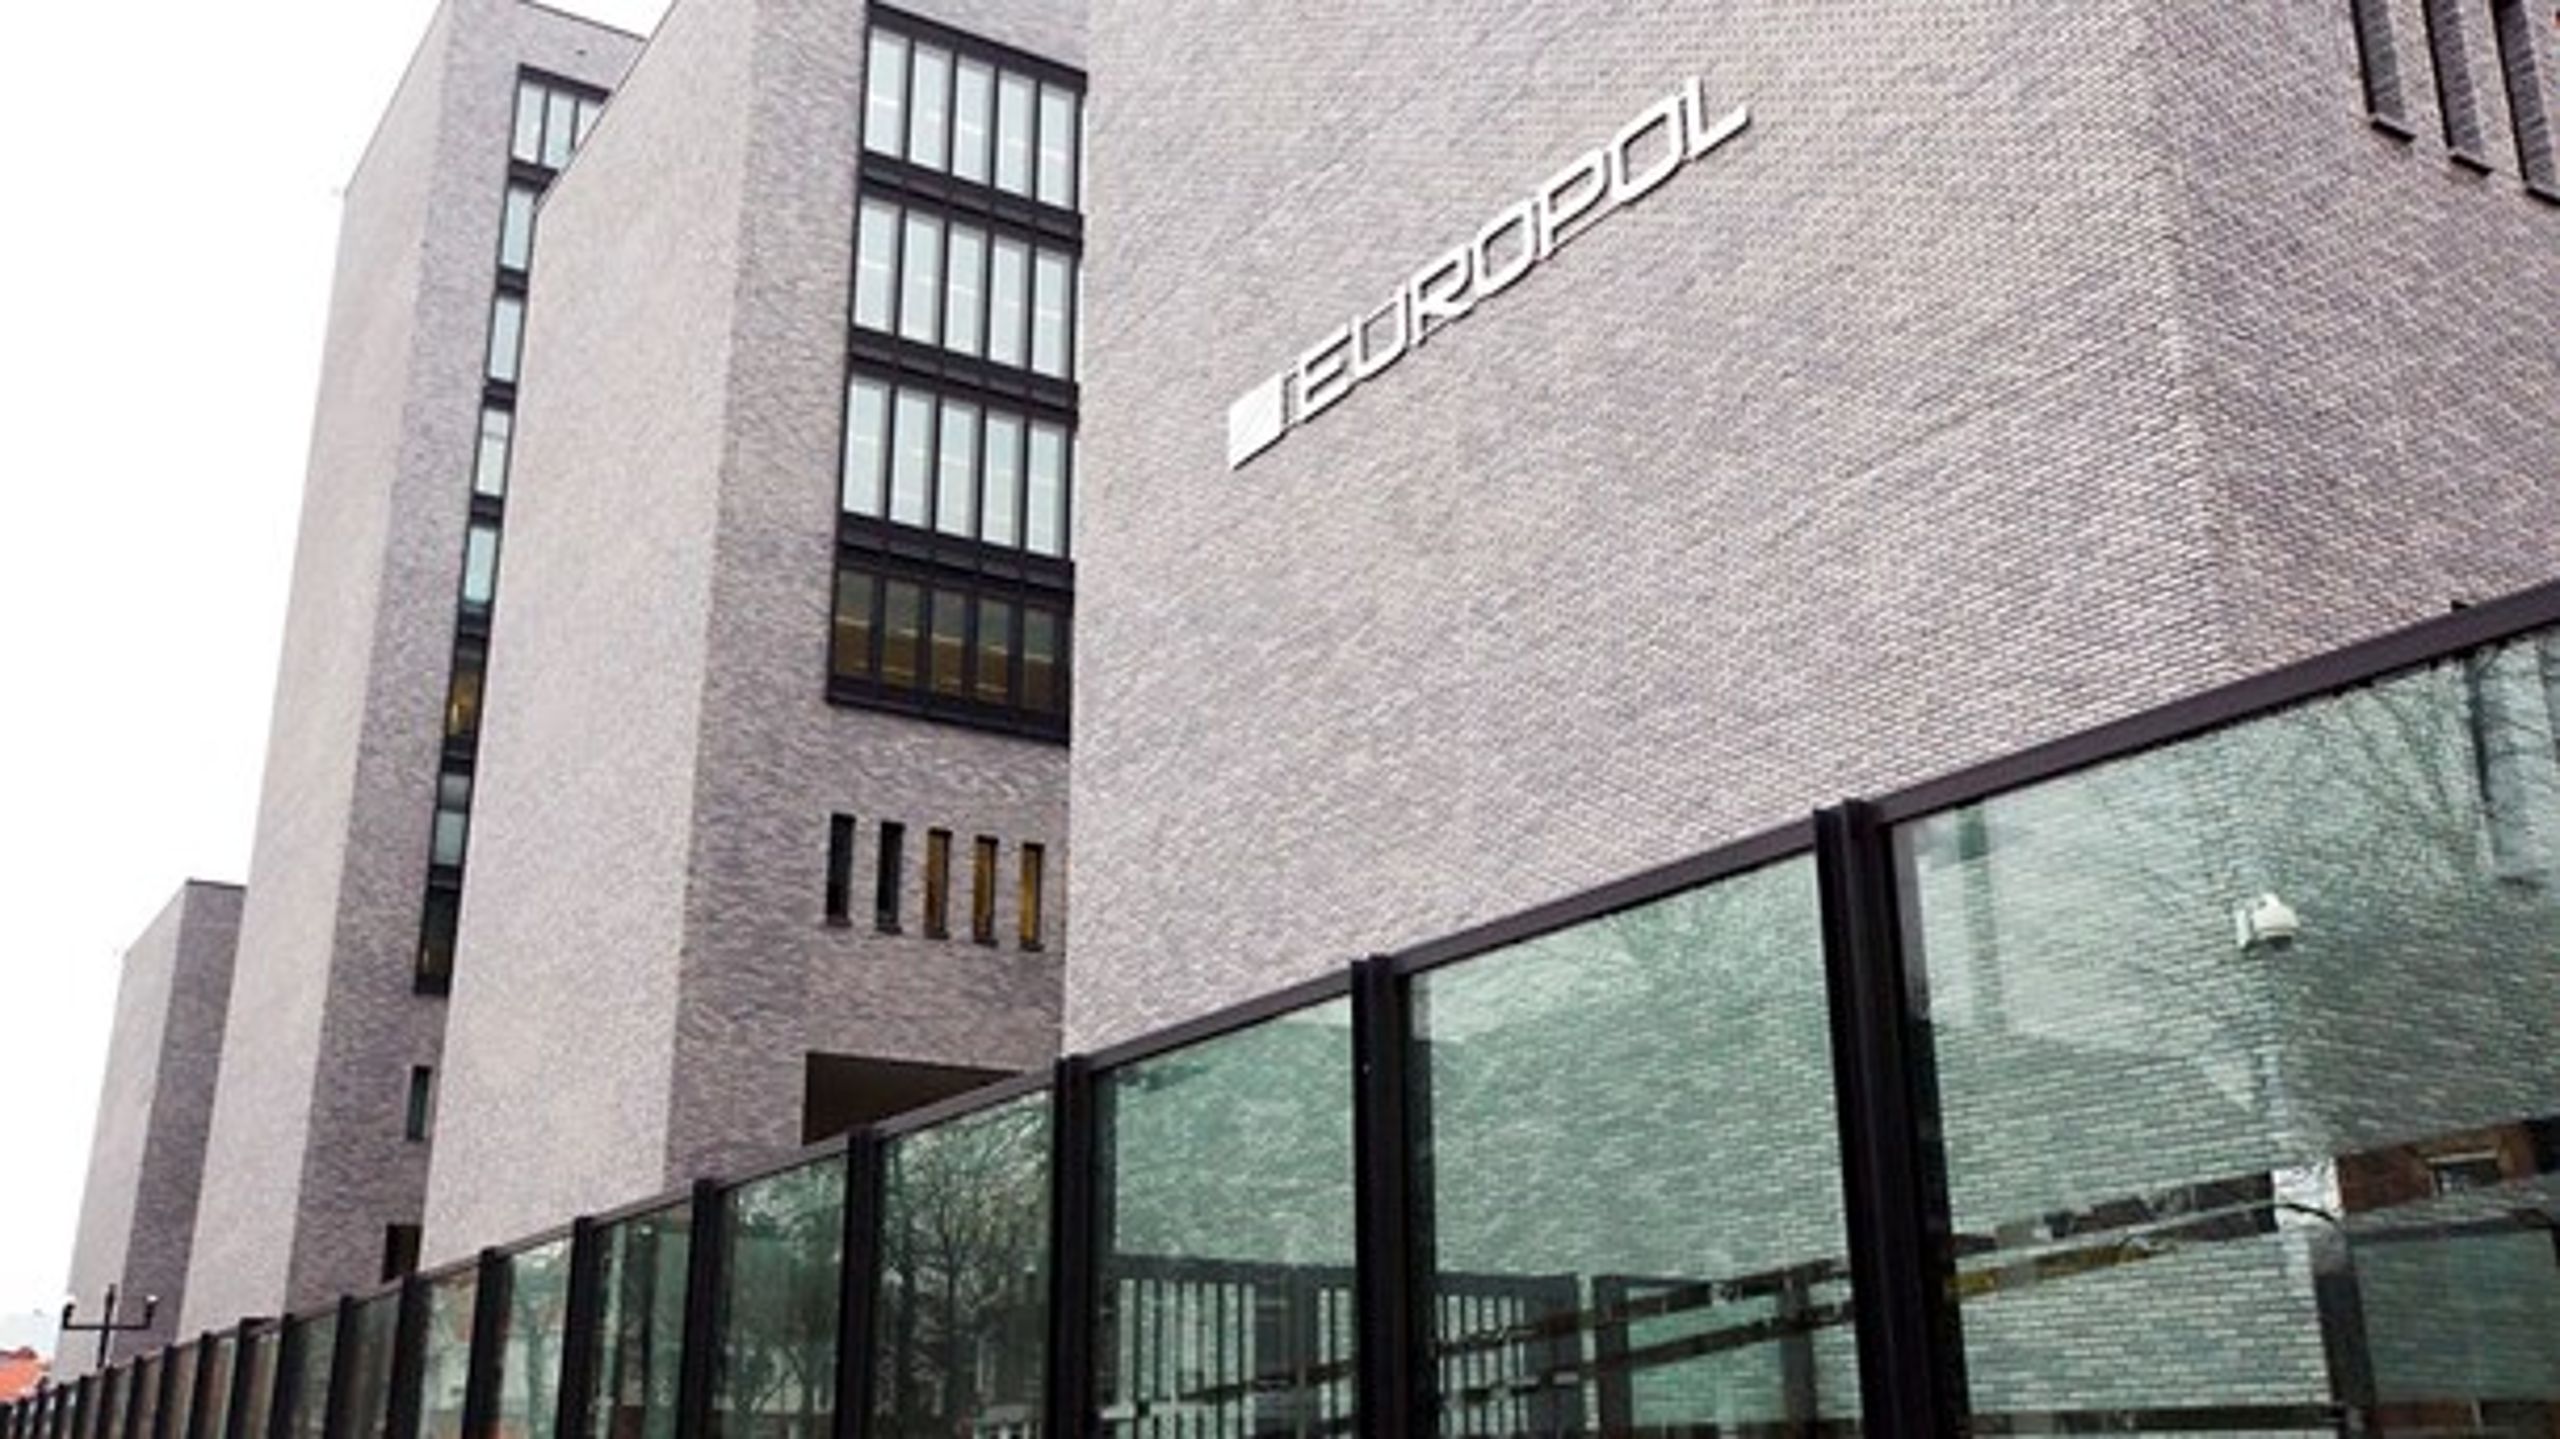 Den danske særaftale for Europol kan meget snart vise sig at være utilstrækkelig. Dansk politi kan i praksis ende med et b-medlemsskab af samarbejdet, selv om stort set ingen ønsker det, skriver&nbsp;Bjarke Møller.&nbsp;